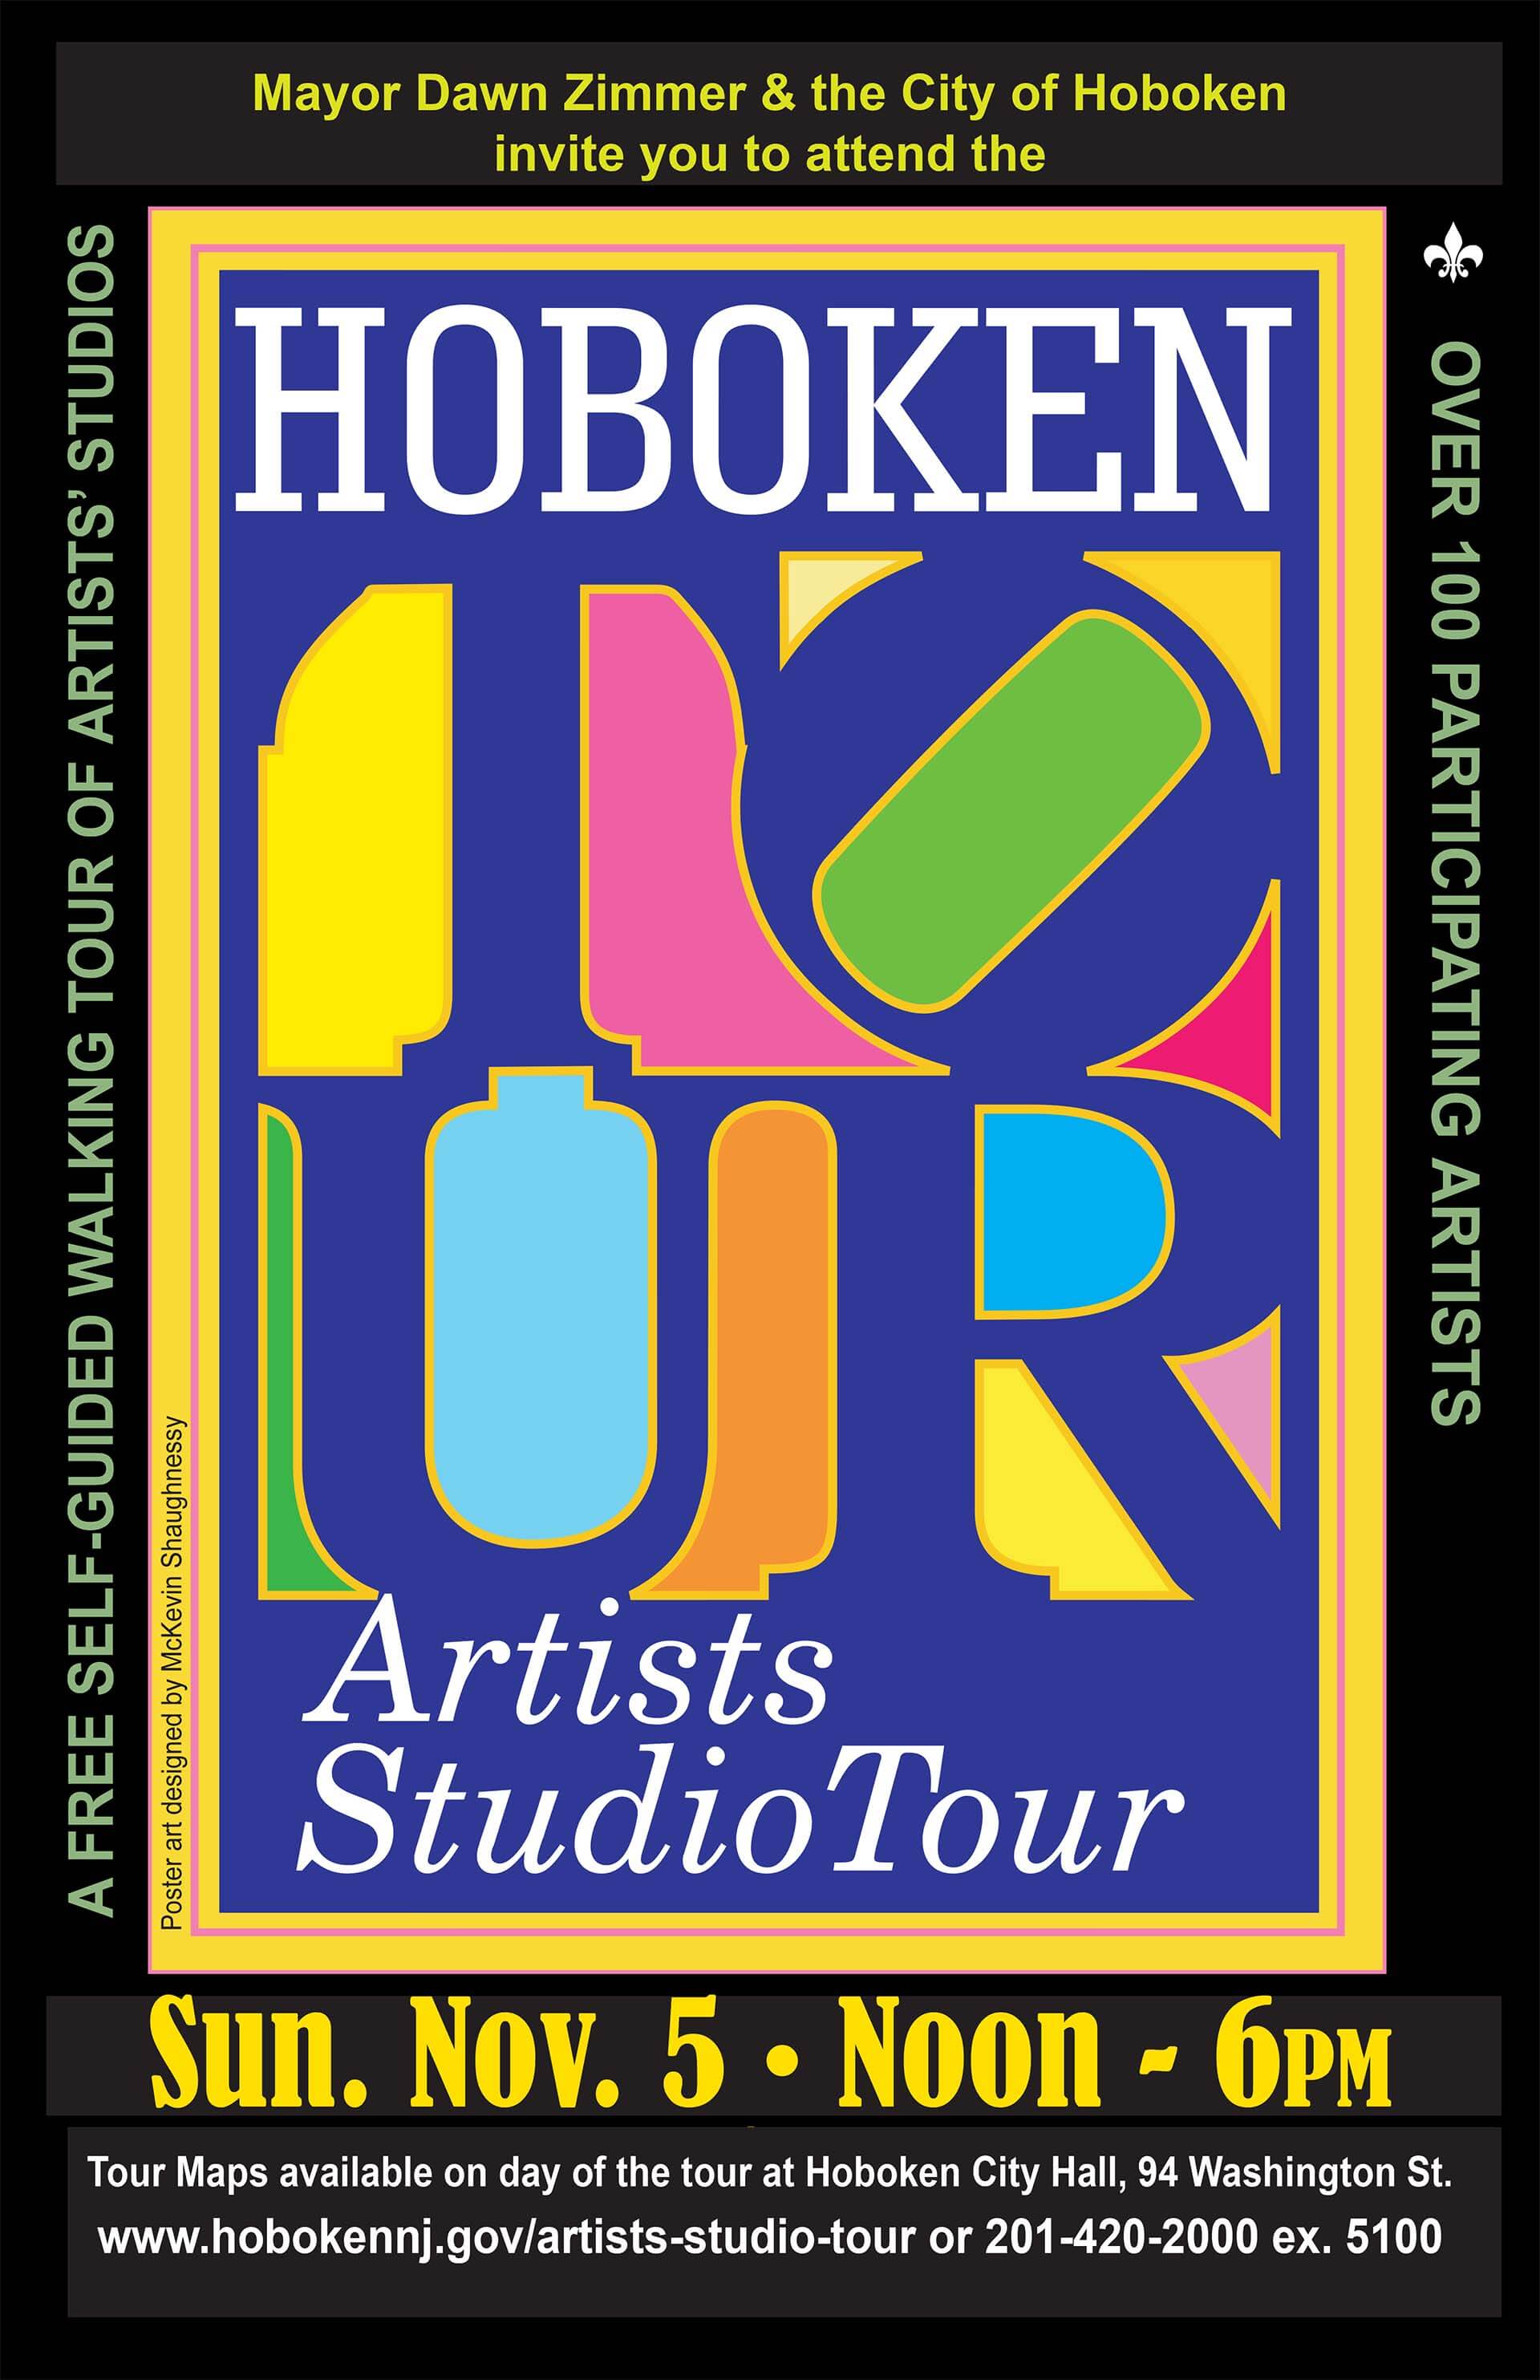 Hoboken Artists Studio Tour Liz Ndoye Art